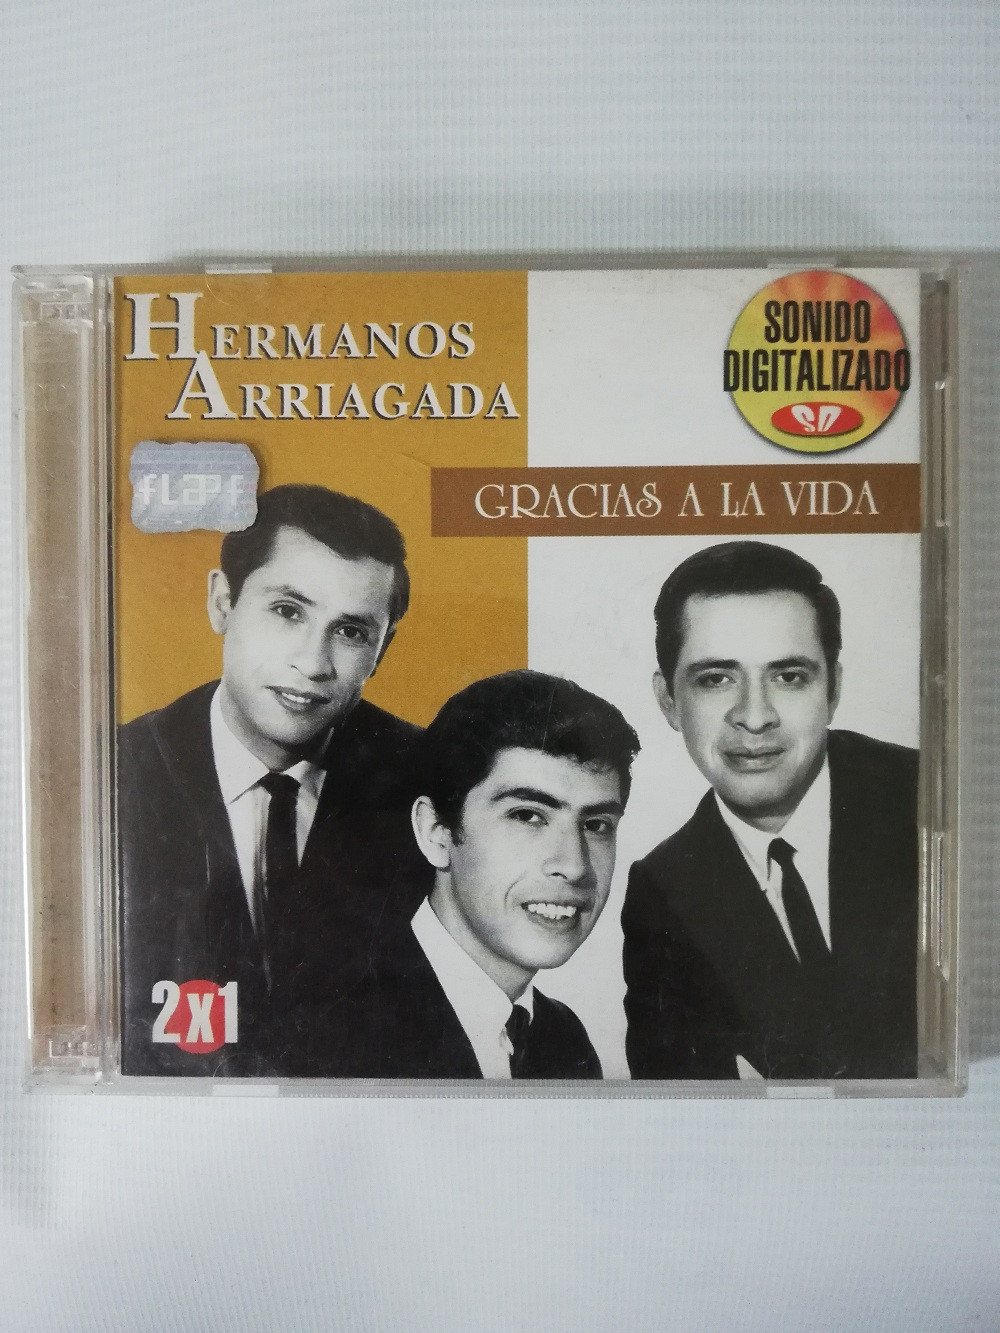 Imagen CD X 2 HERMANOS ARRIAGADA - GRACIAS A LA VIDA 1